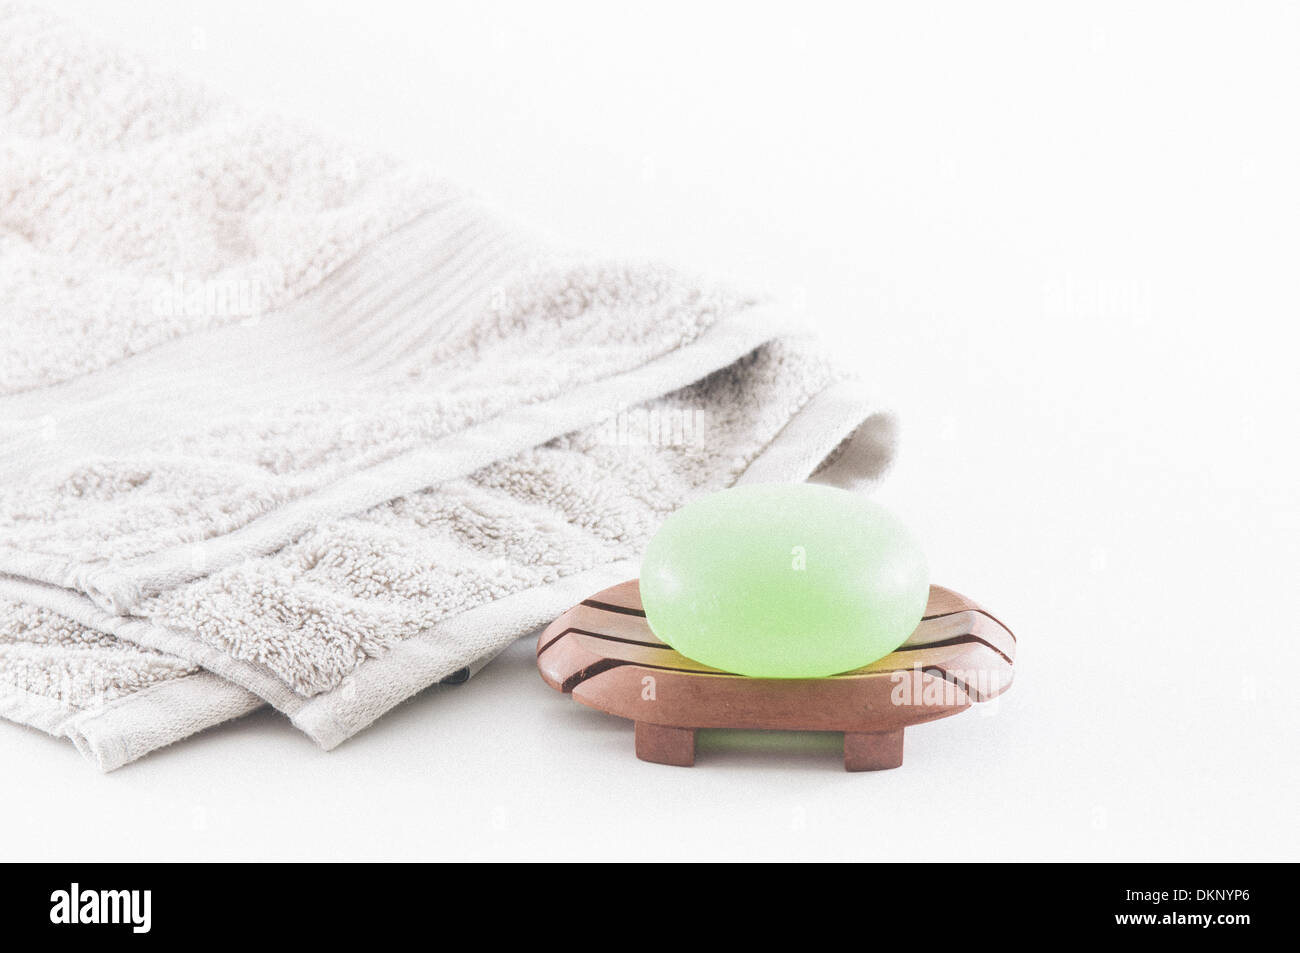 Savon vert vif et lotions avec une serviette derrière eux impliquant une belle journée spa isolated on white Banque D'Images